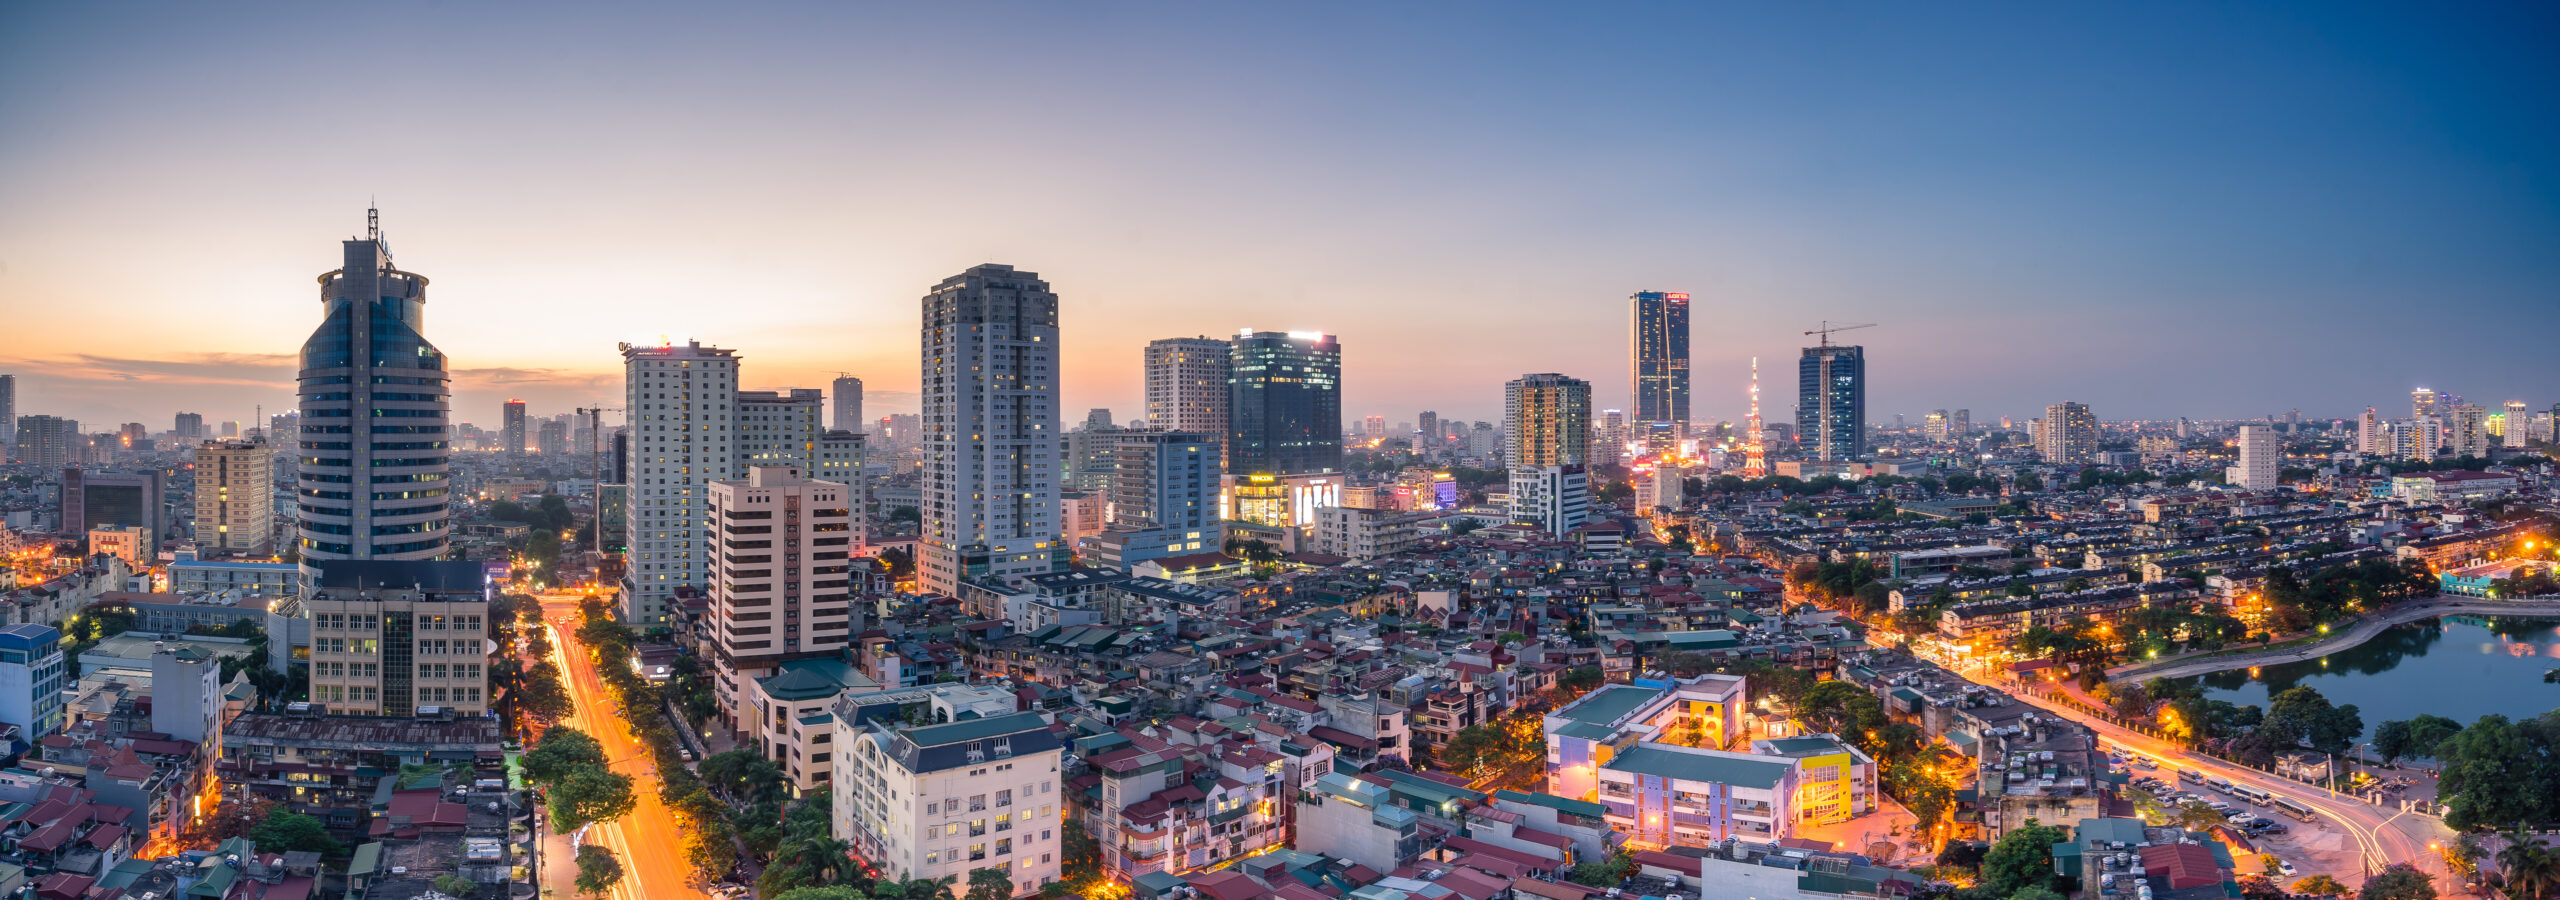 Khan hiếm nguồn cung căn hộ mới của thị trường bất động sản Hà Nội nửa cuối năm 2022